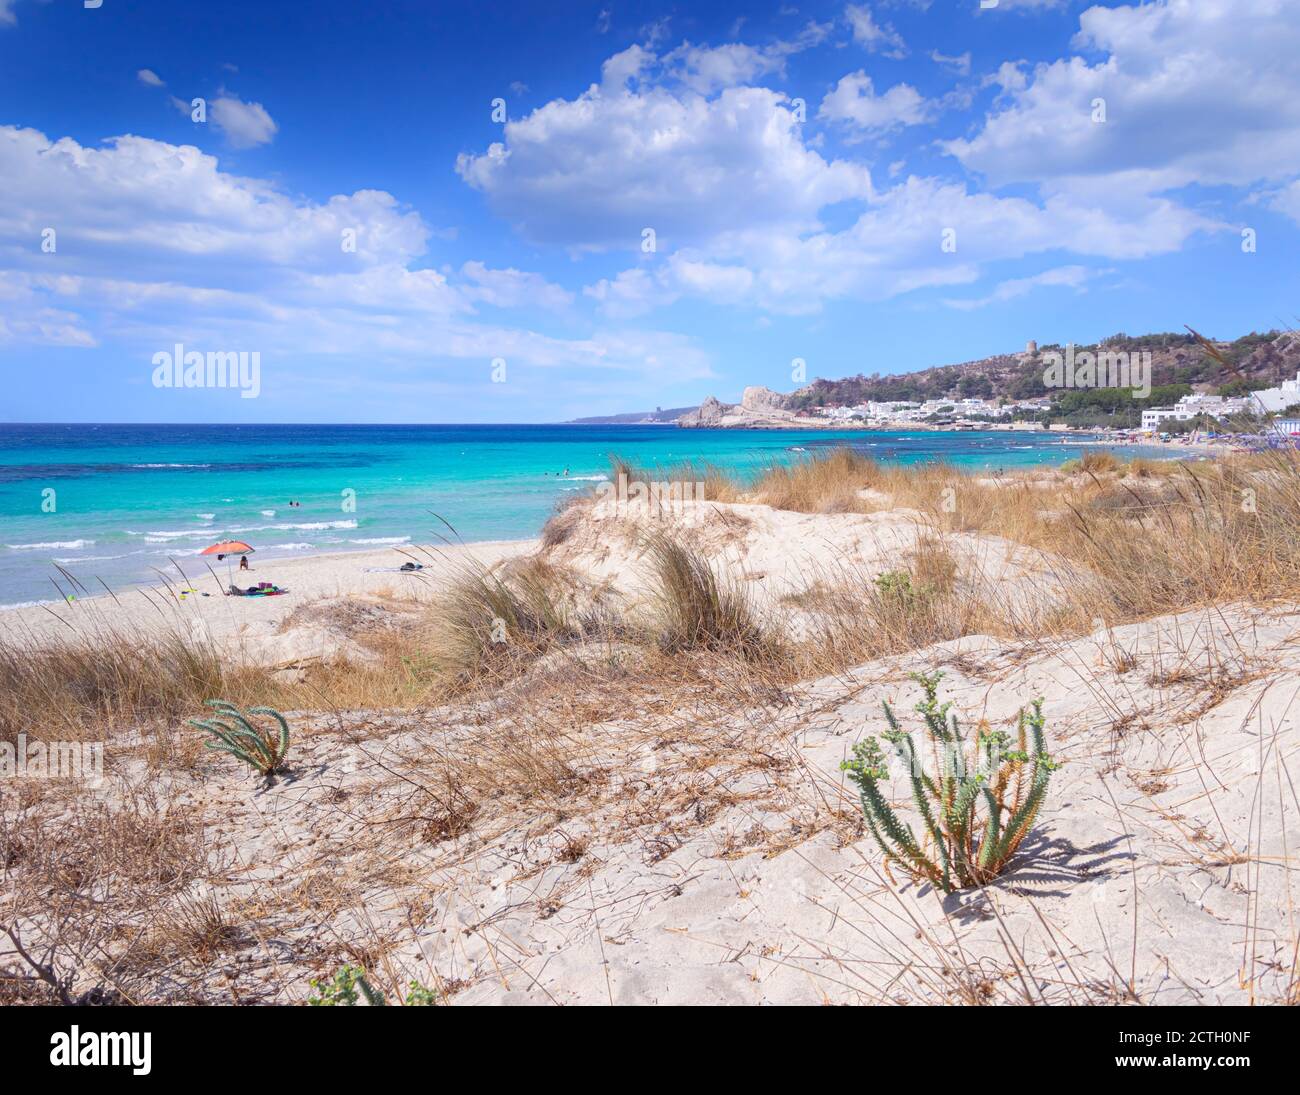 Lido Conchiglie Beach in Salento, Apulia (Italy). Stock Photo